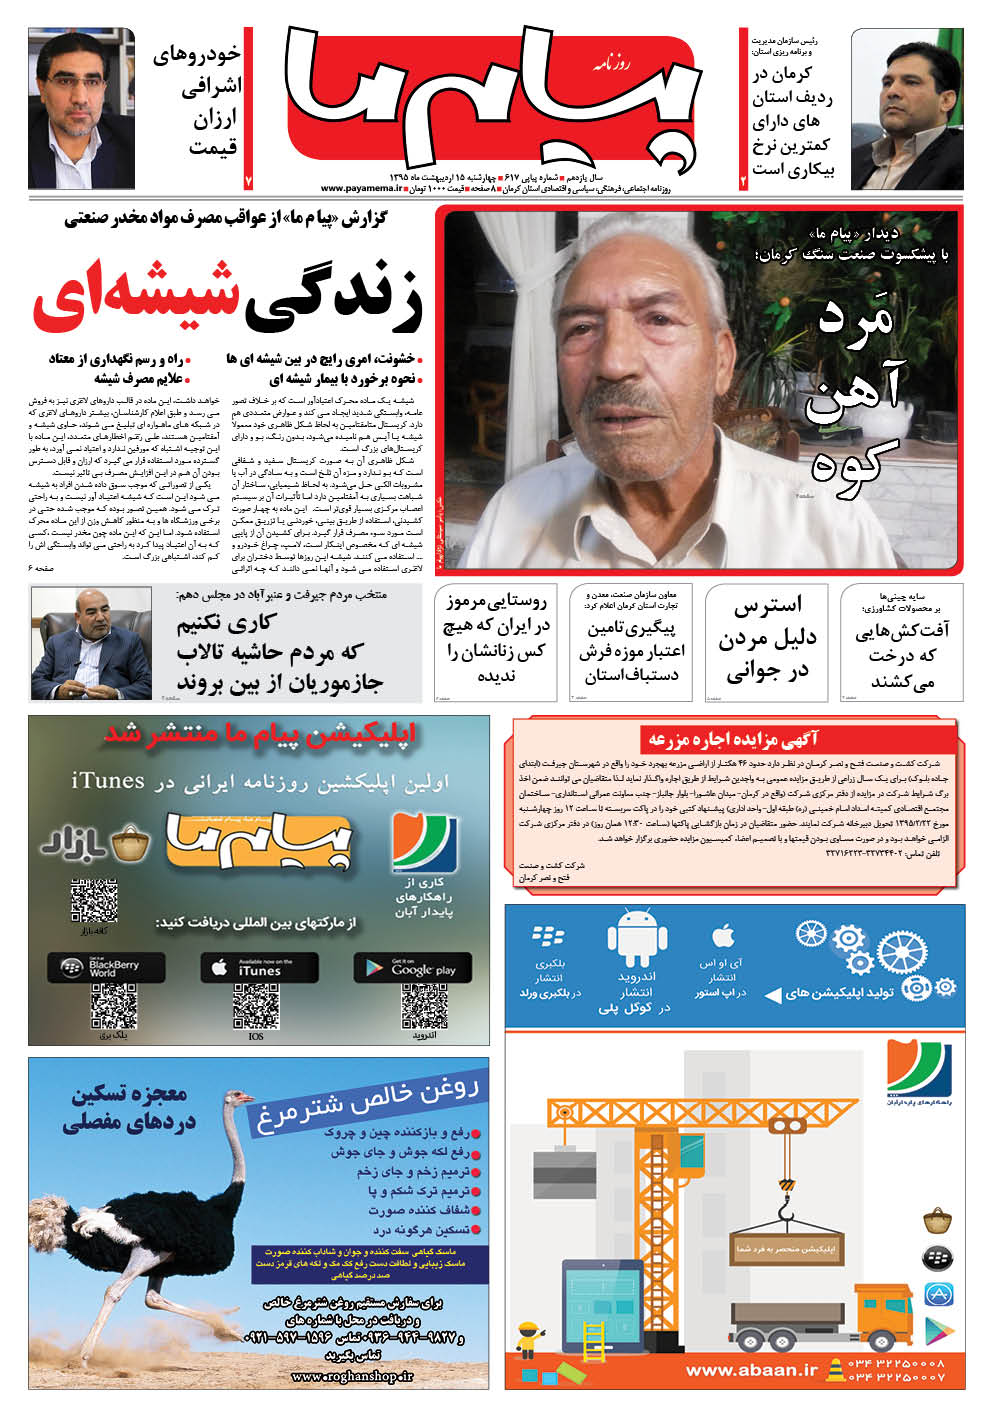 صفحه صفحه اول شماره کرمان ویچ روزنامه پیام ما